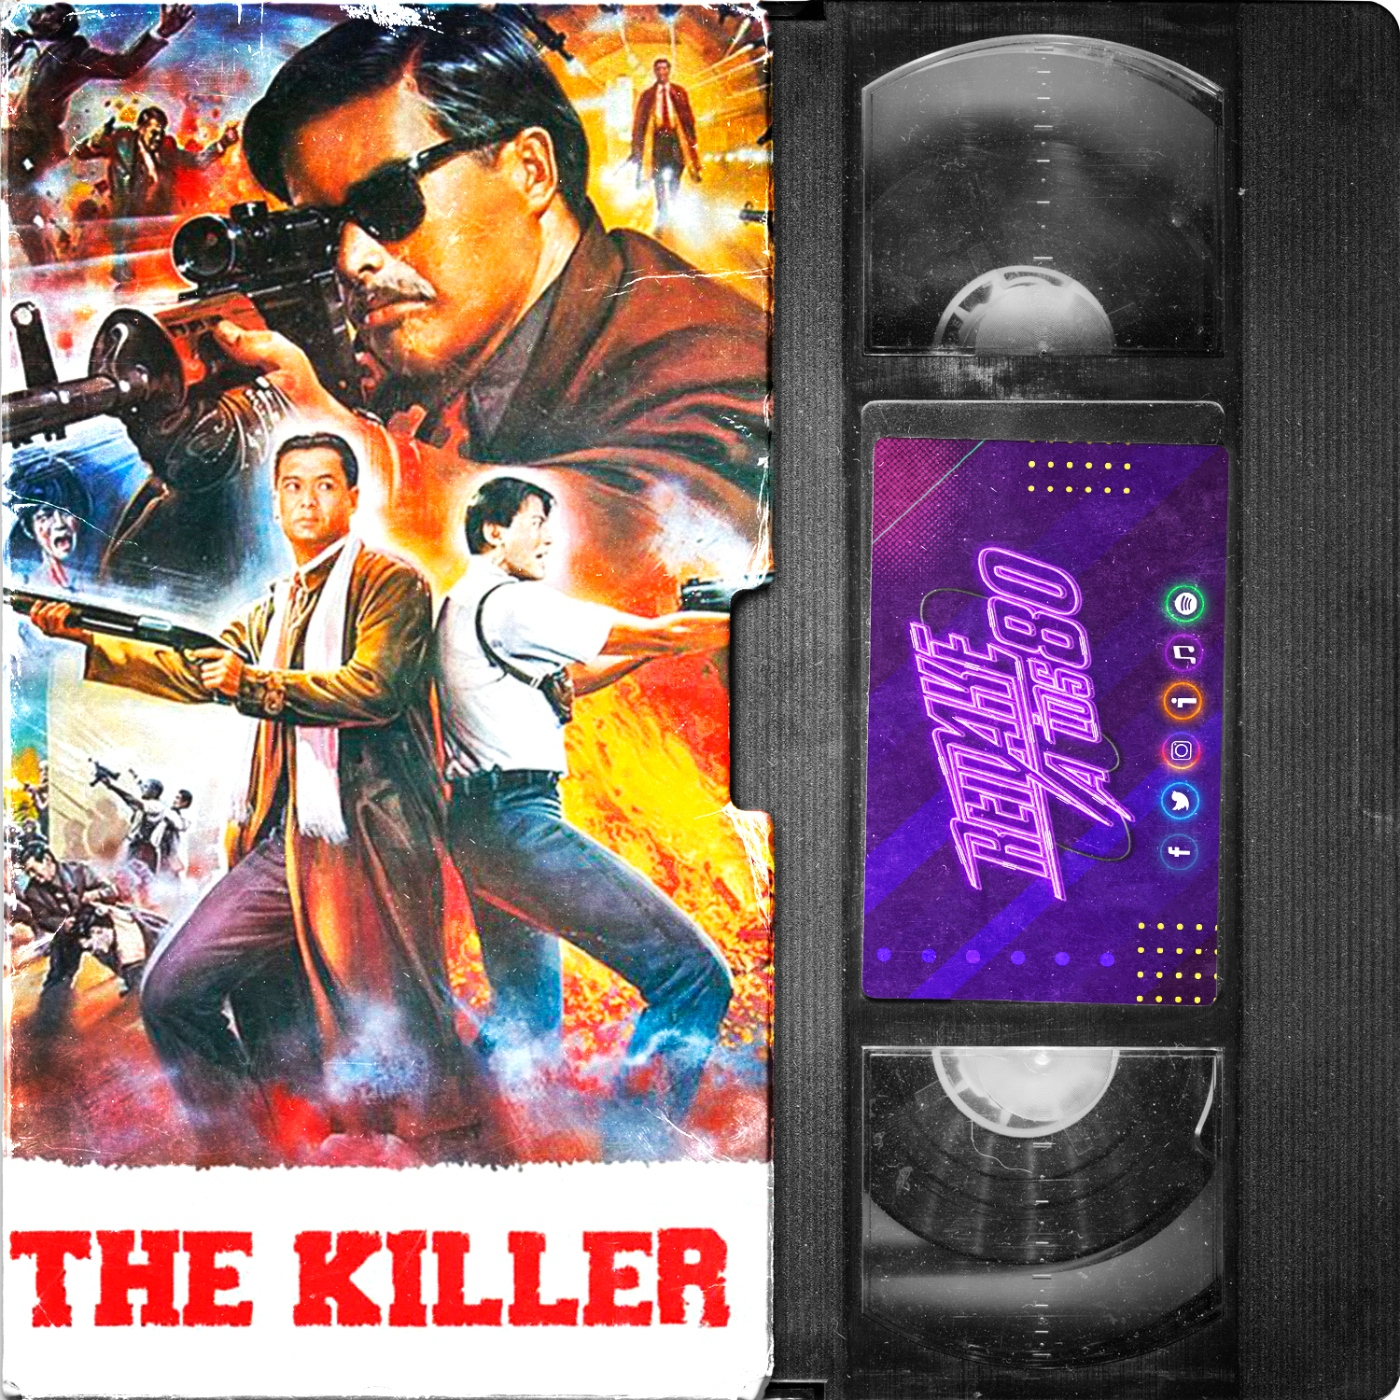 THE KILLER (John Woo,1989)|09x07 Remake a los 80|